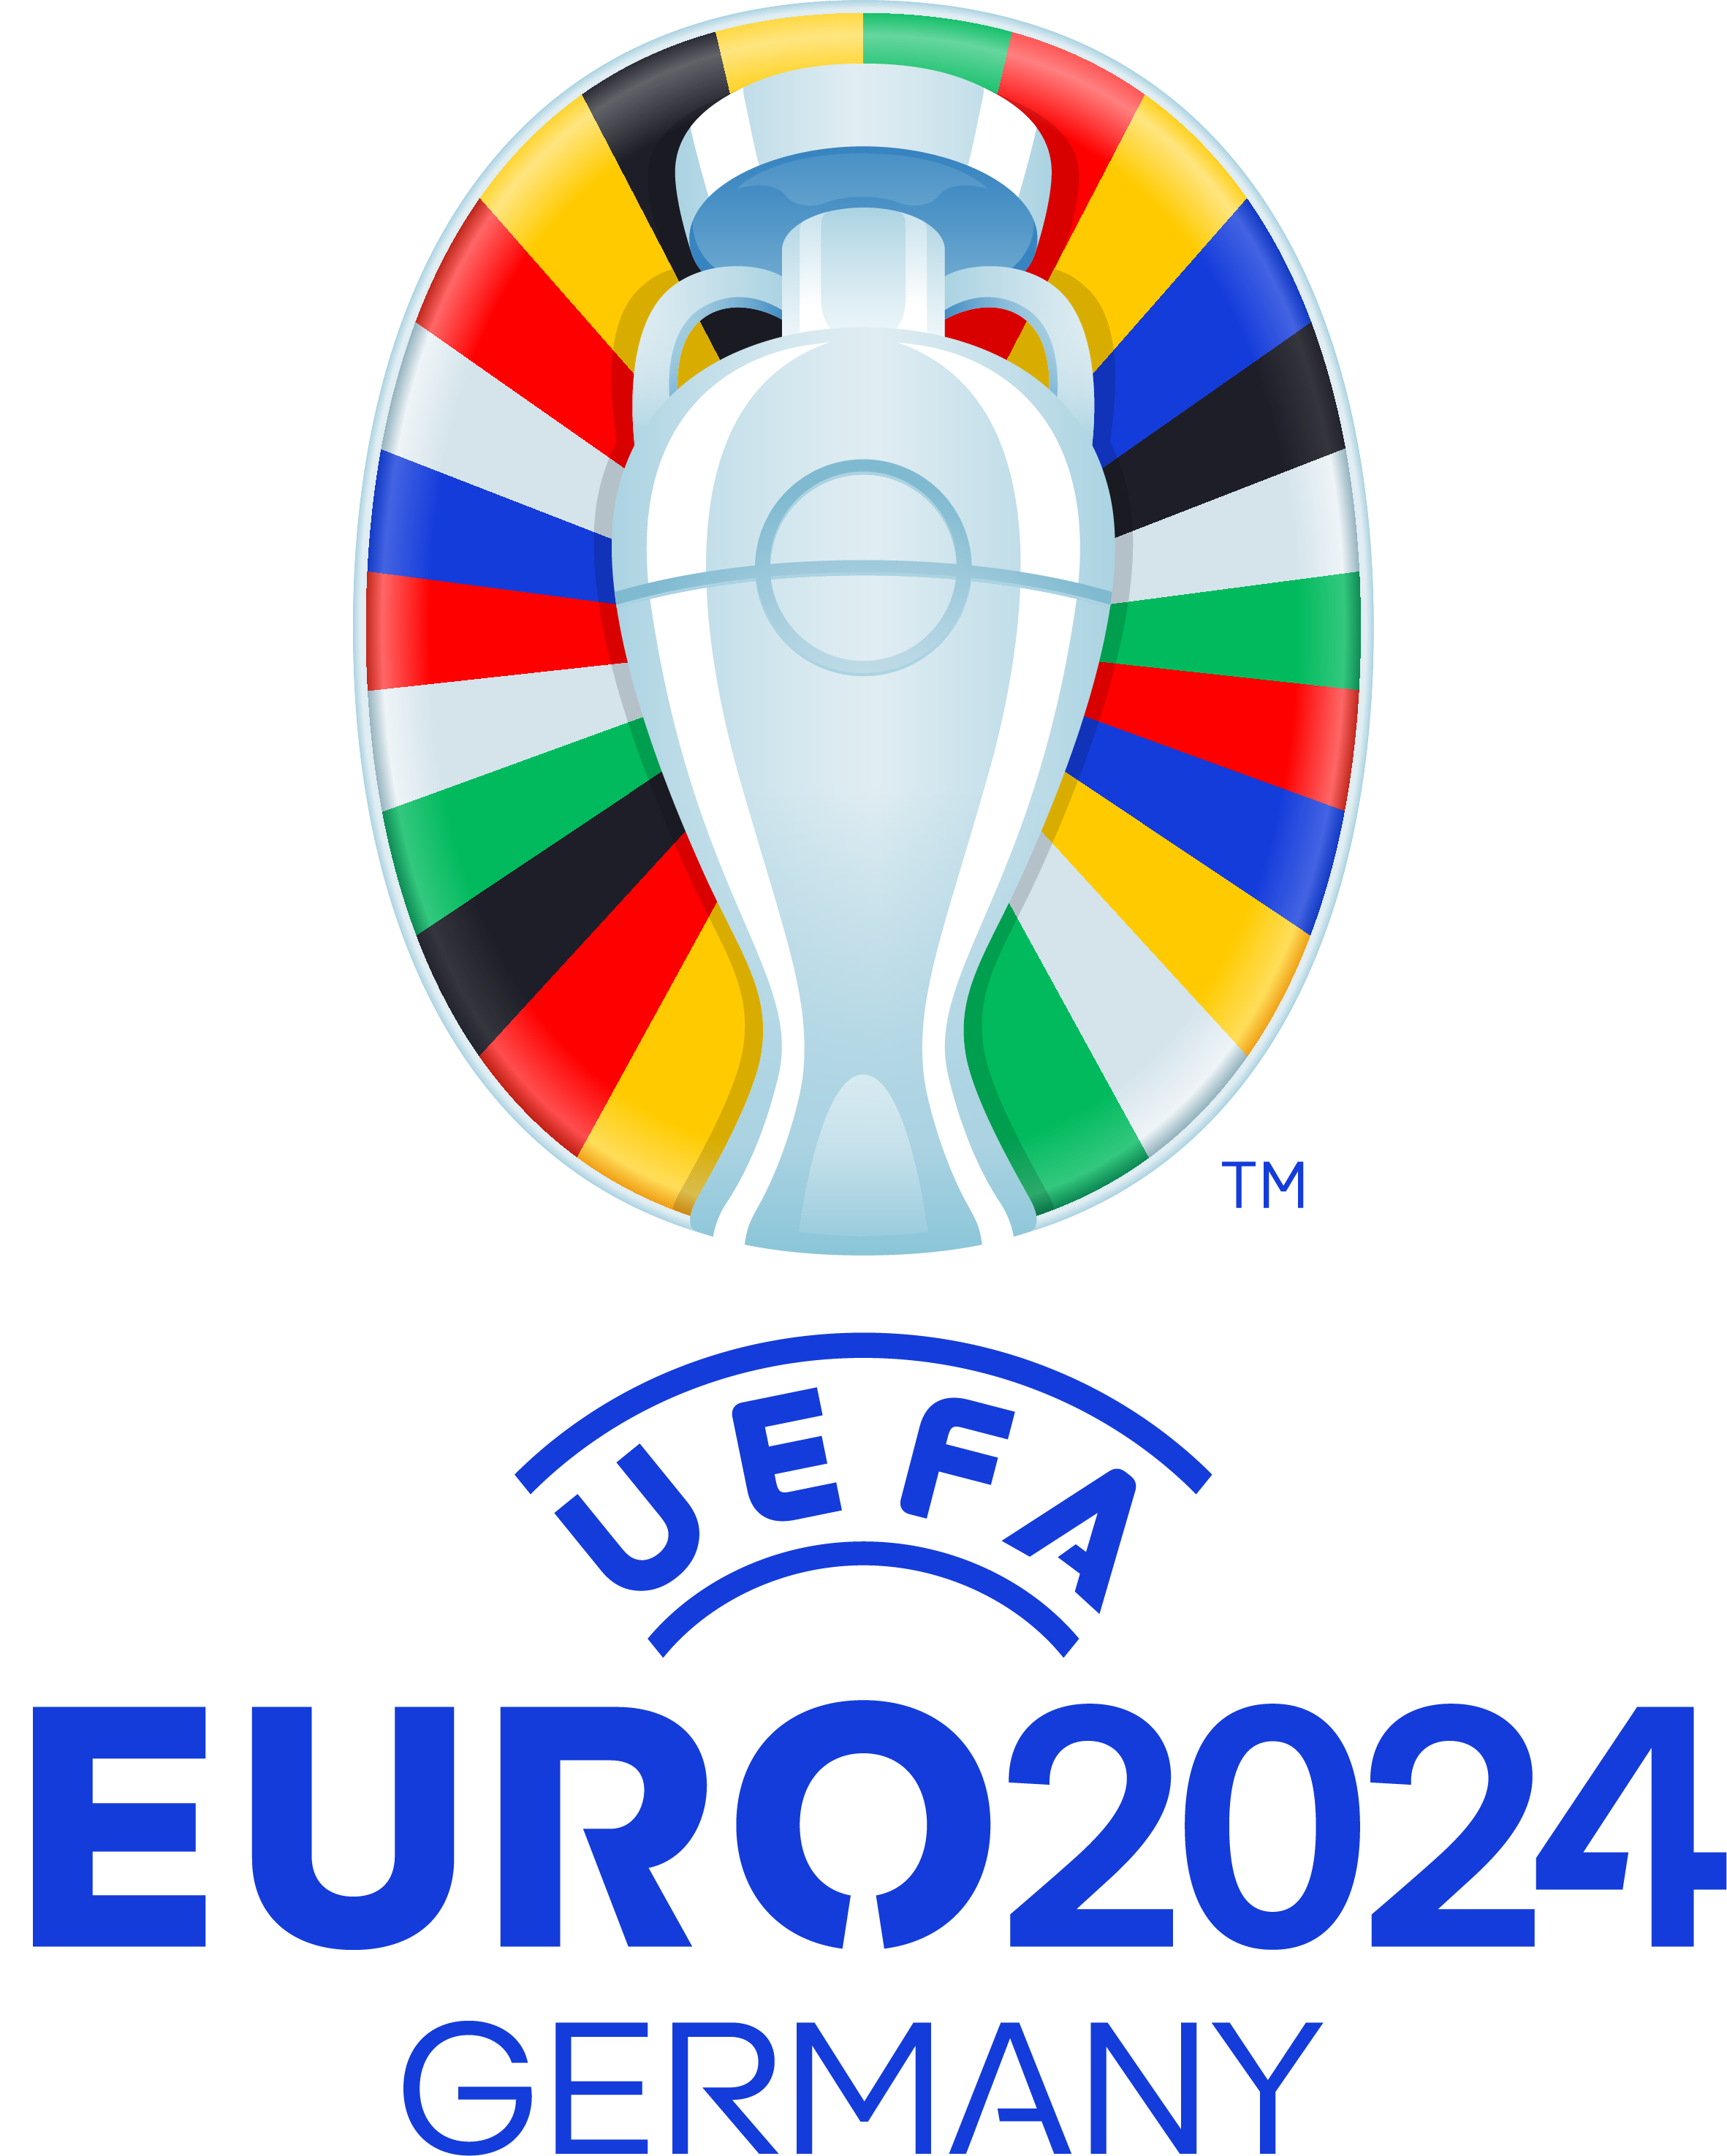 EURO 2024 UEFA